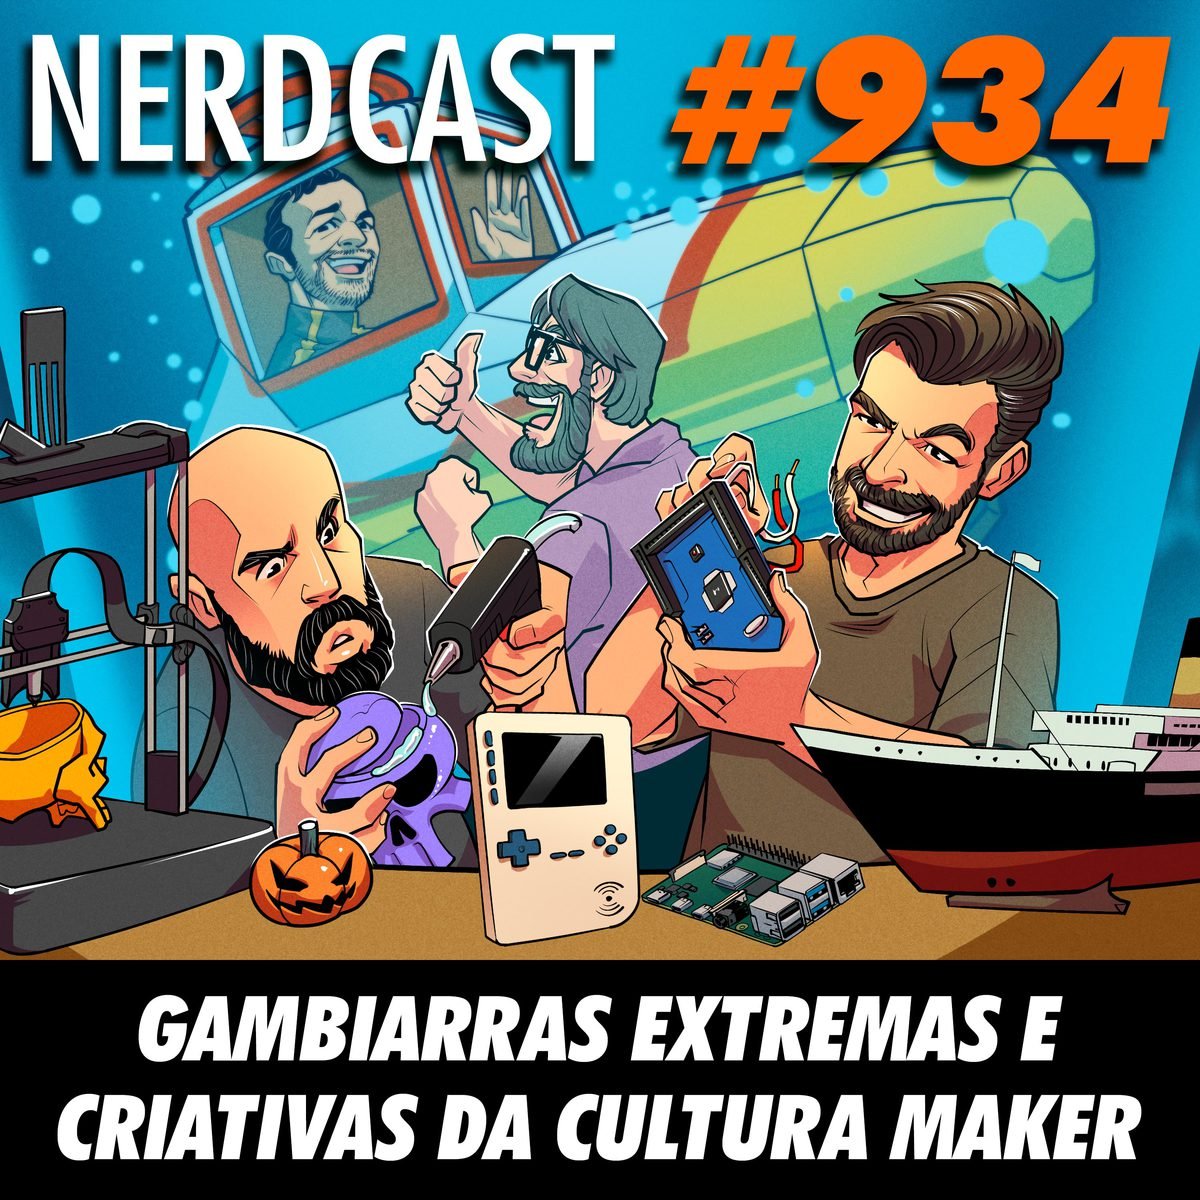 NerdCast 934 - Gambiarras extremas e criativas da Cultura Maker